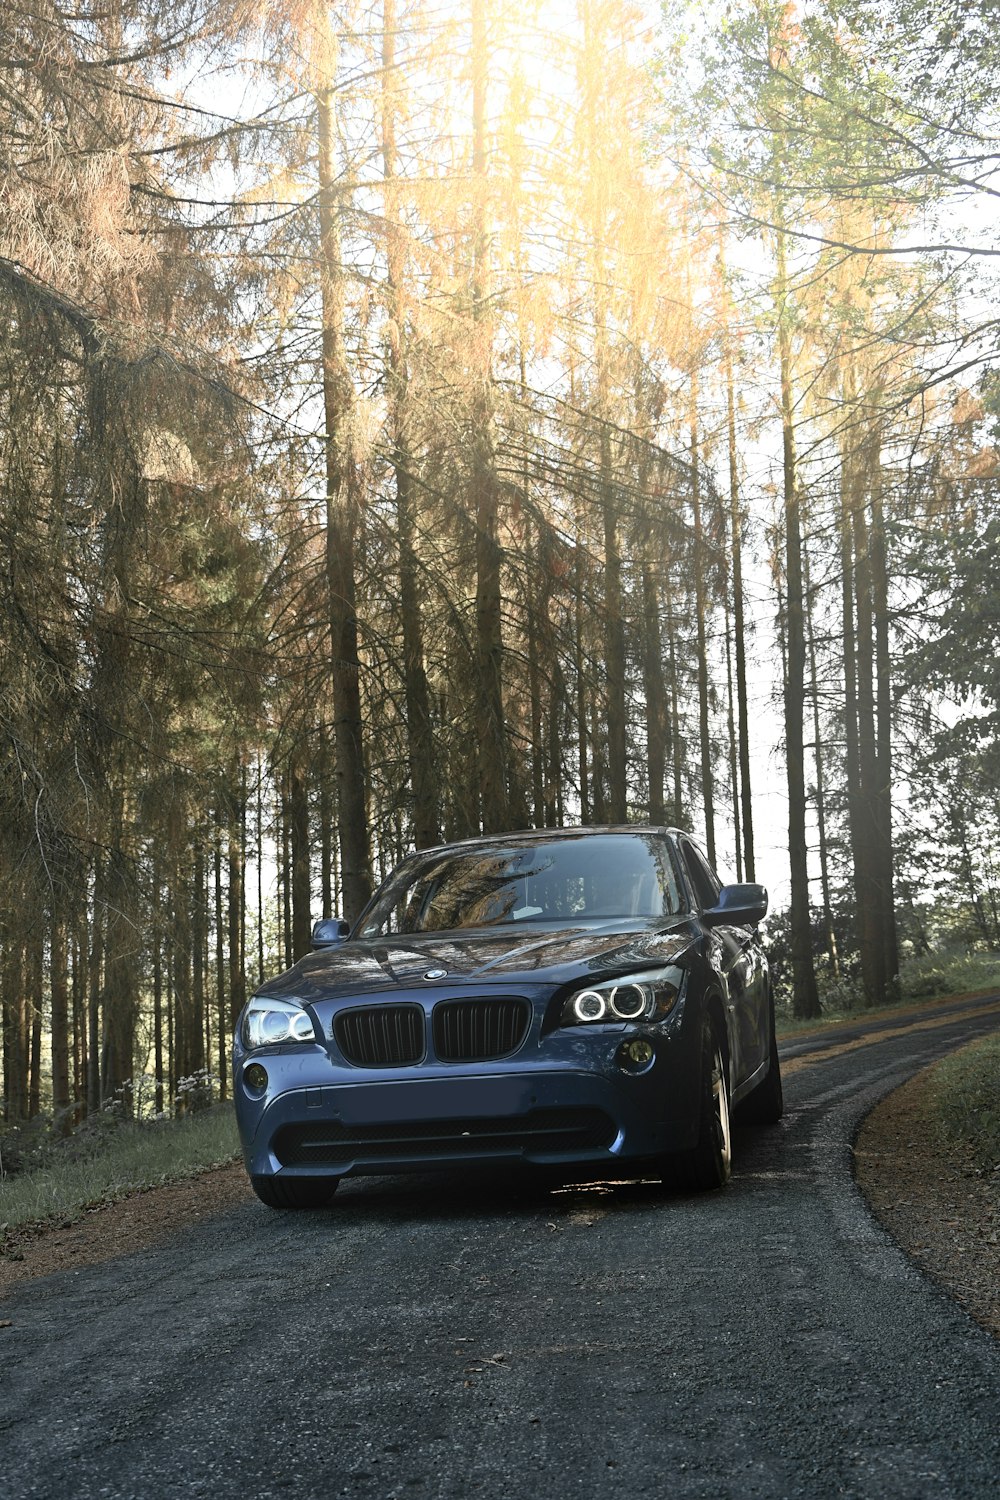 BMW M 3 azul en la carretera entre árboles durante el día